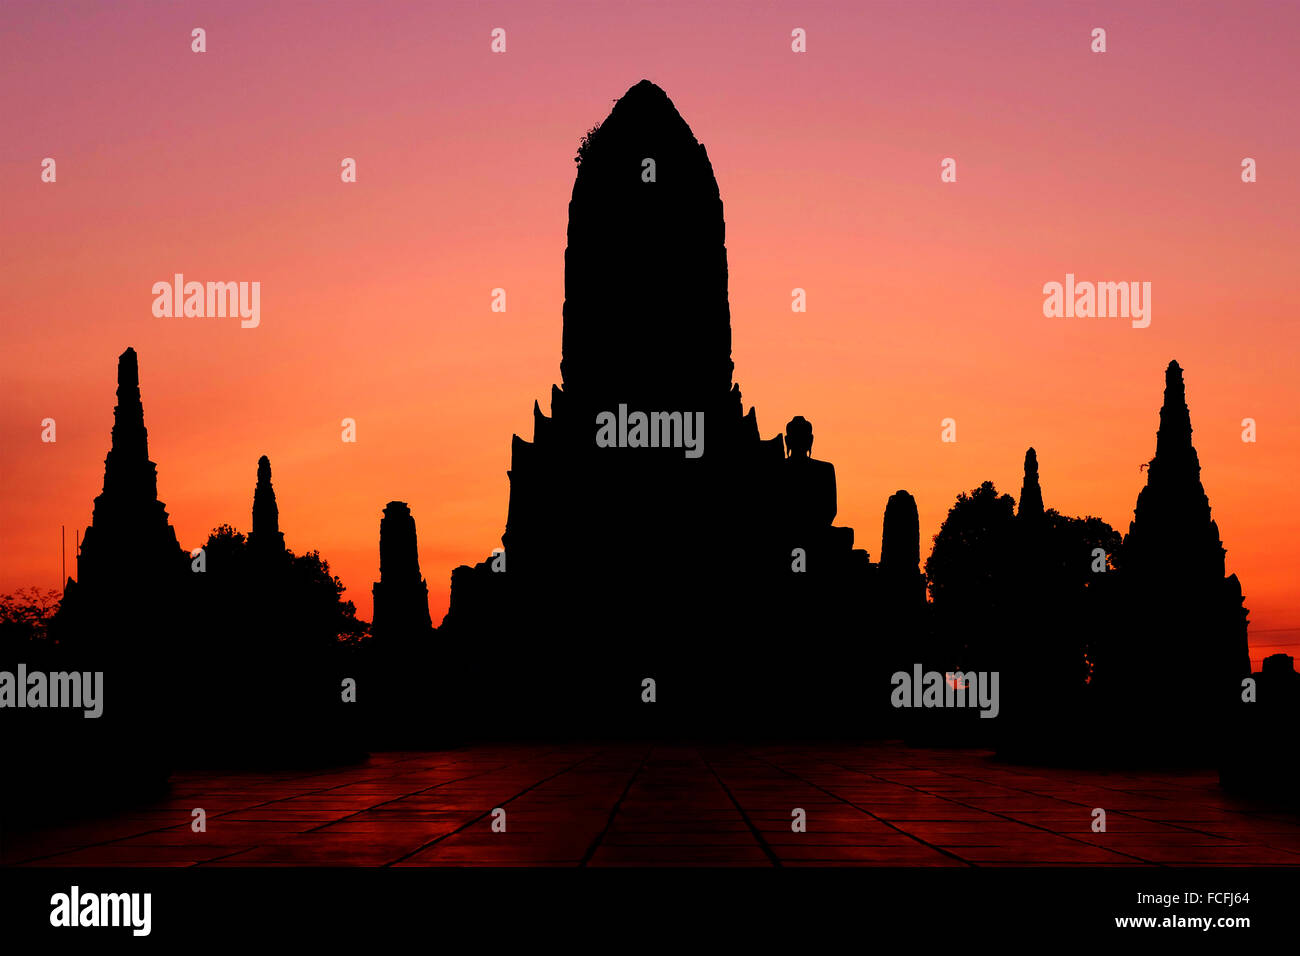 Silhouette of Wat Chaiwatthanaram, Ayutthaya, Thailand Stock Photo